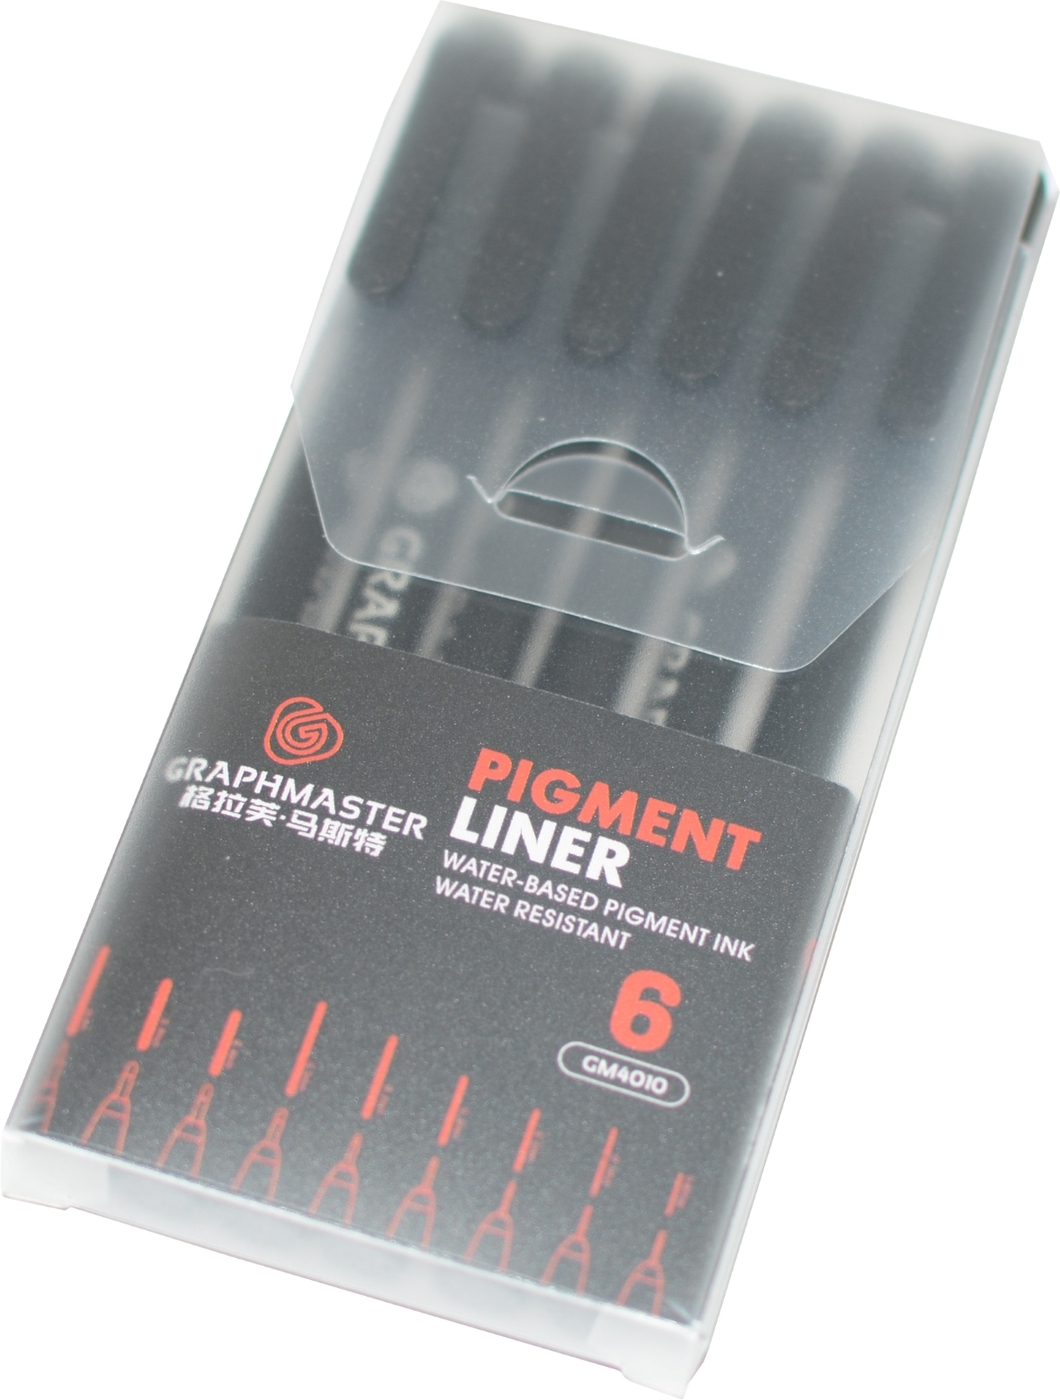  капиллярных ручек линеров 6 штук GraphMaster Pigment Liner черные .